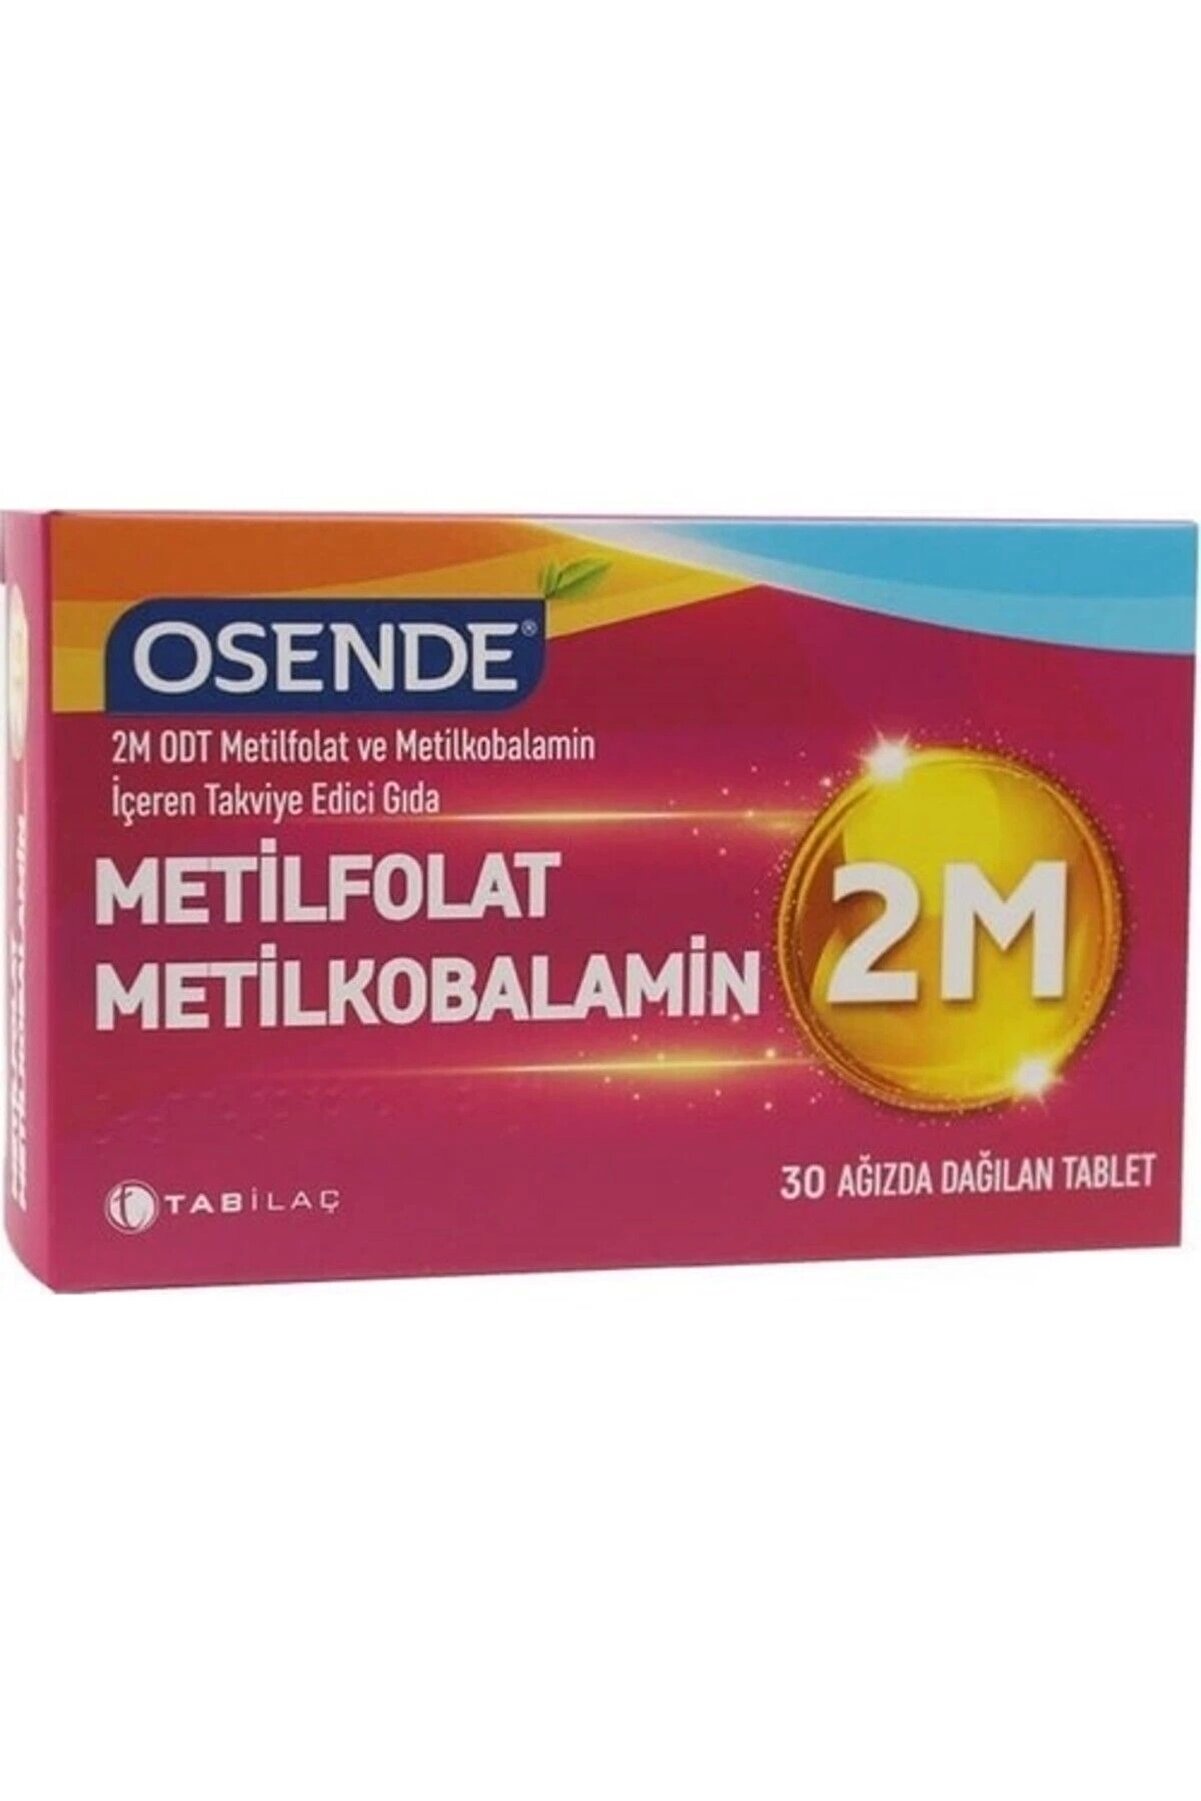 Osende 2m Metilfolat Metilkobalamin 30 Tablet